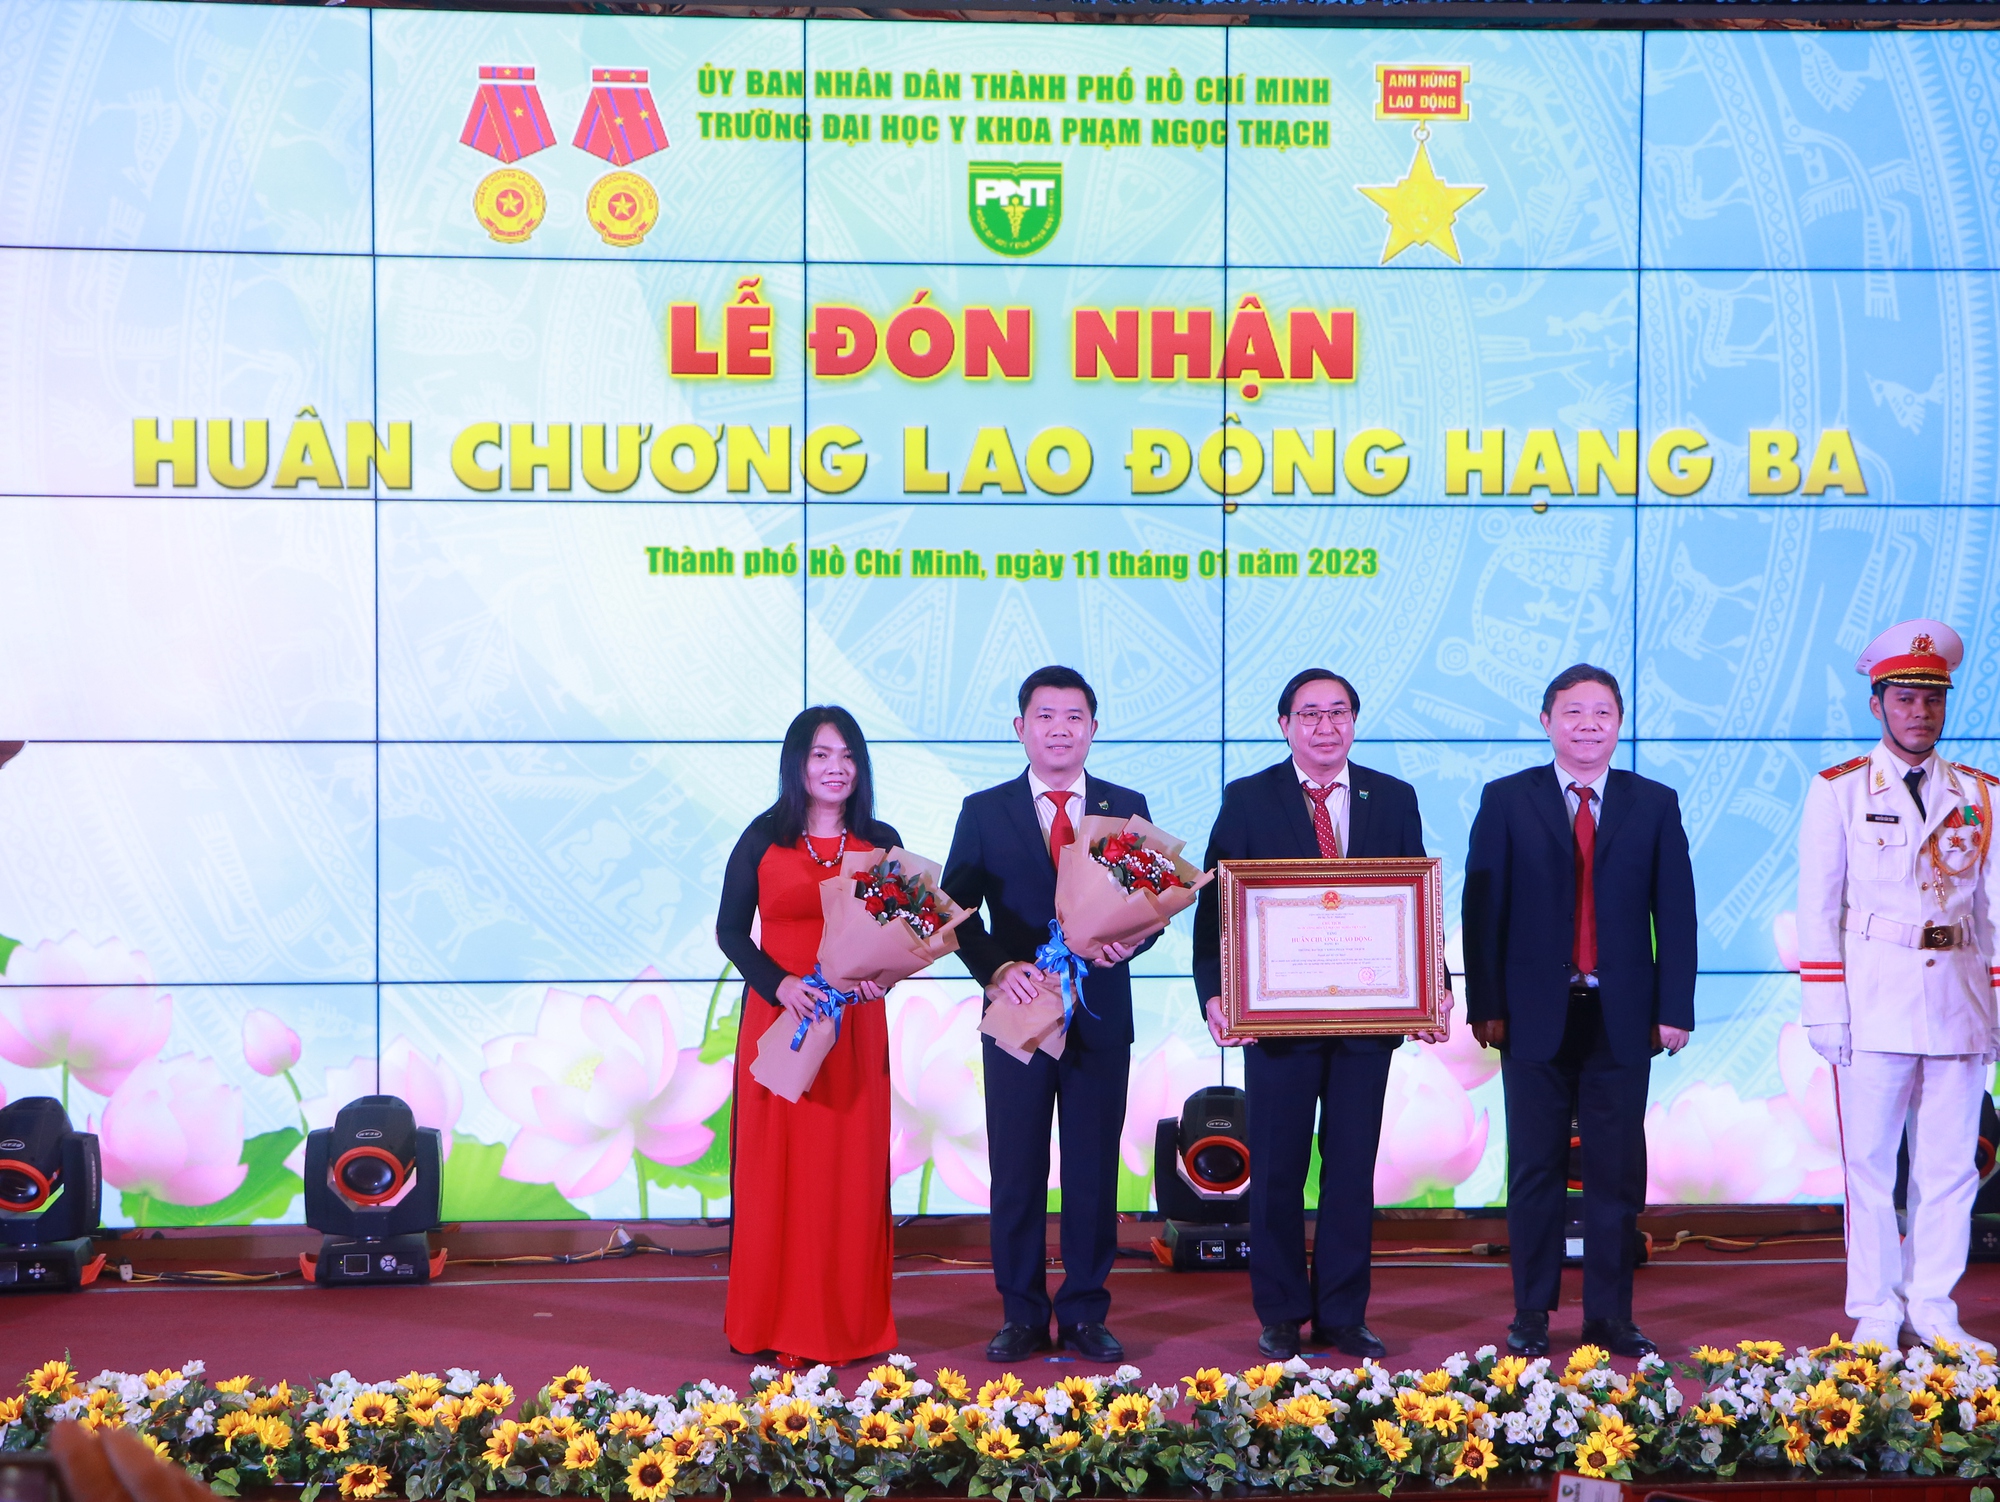 Trường ĐHYK Phạm Ngọc Thạch nhận khen thưởng kép cấp Nhà nước - Ảnh 4.